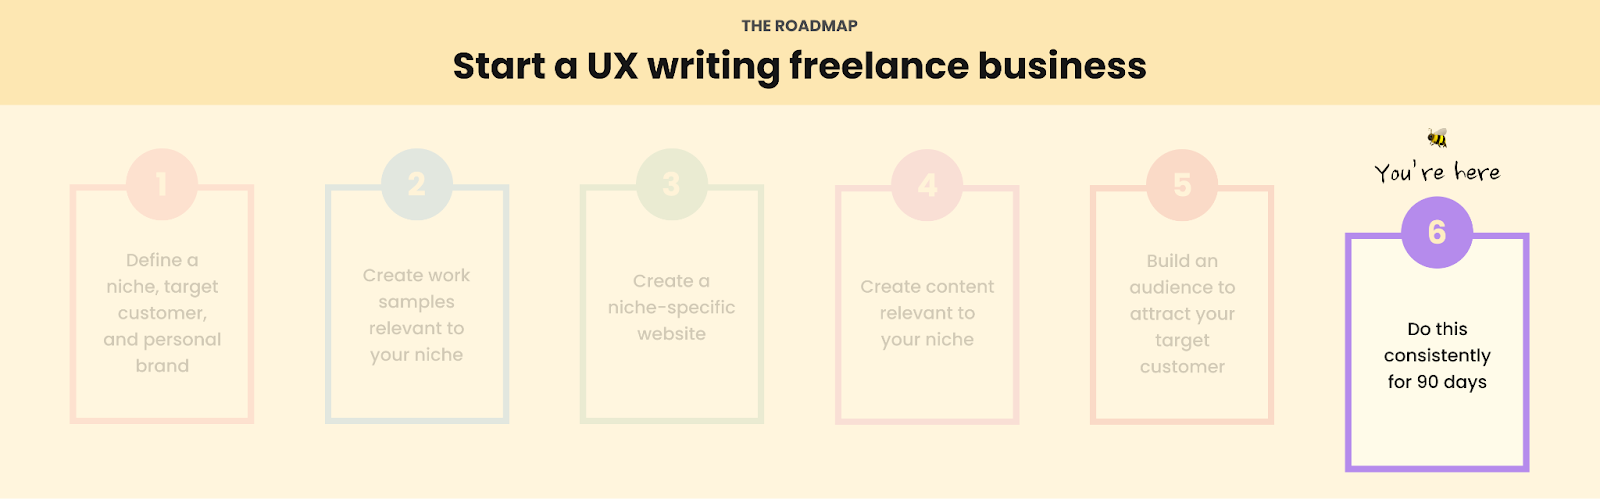 ux writing freelance